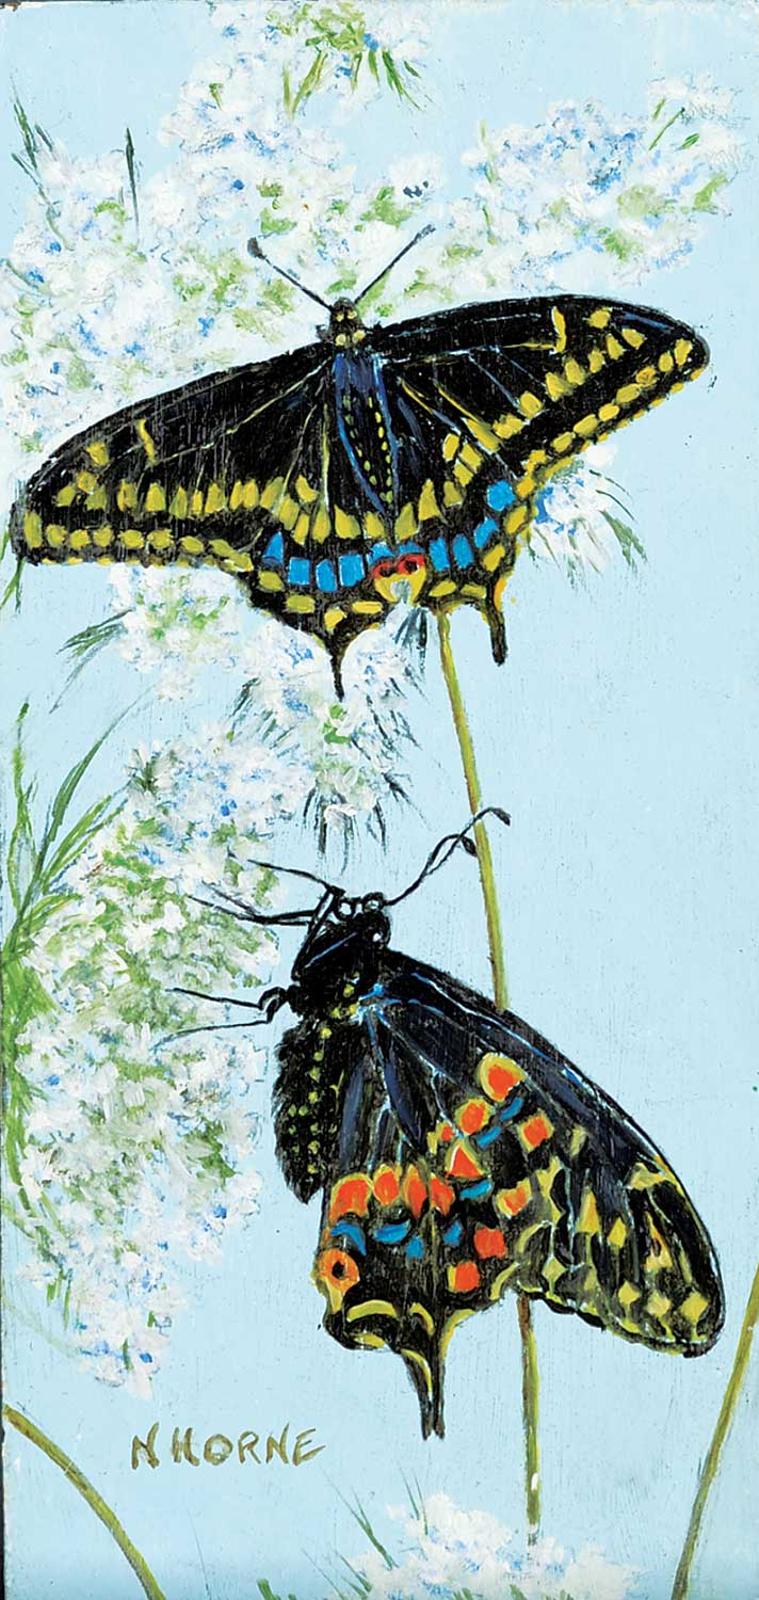 N. Horne - Black Swallowtail